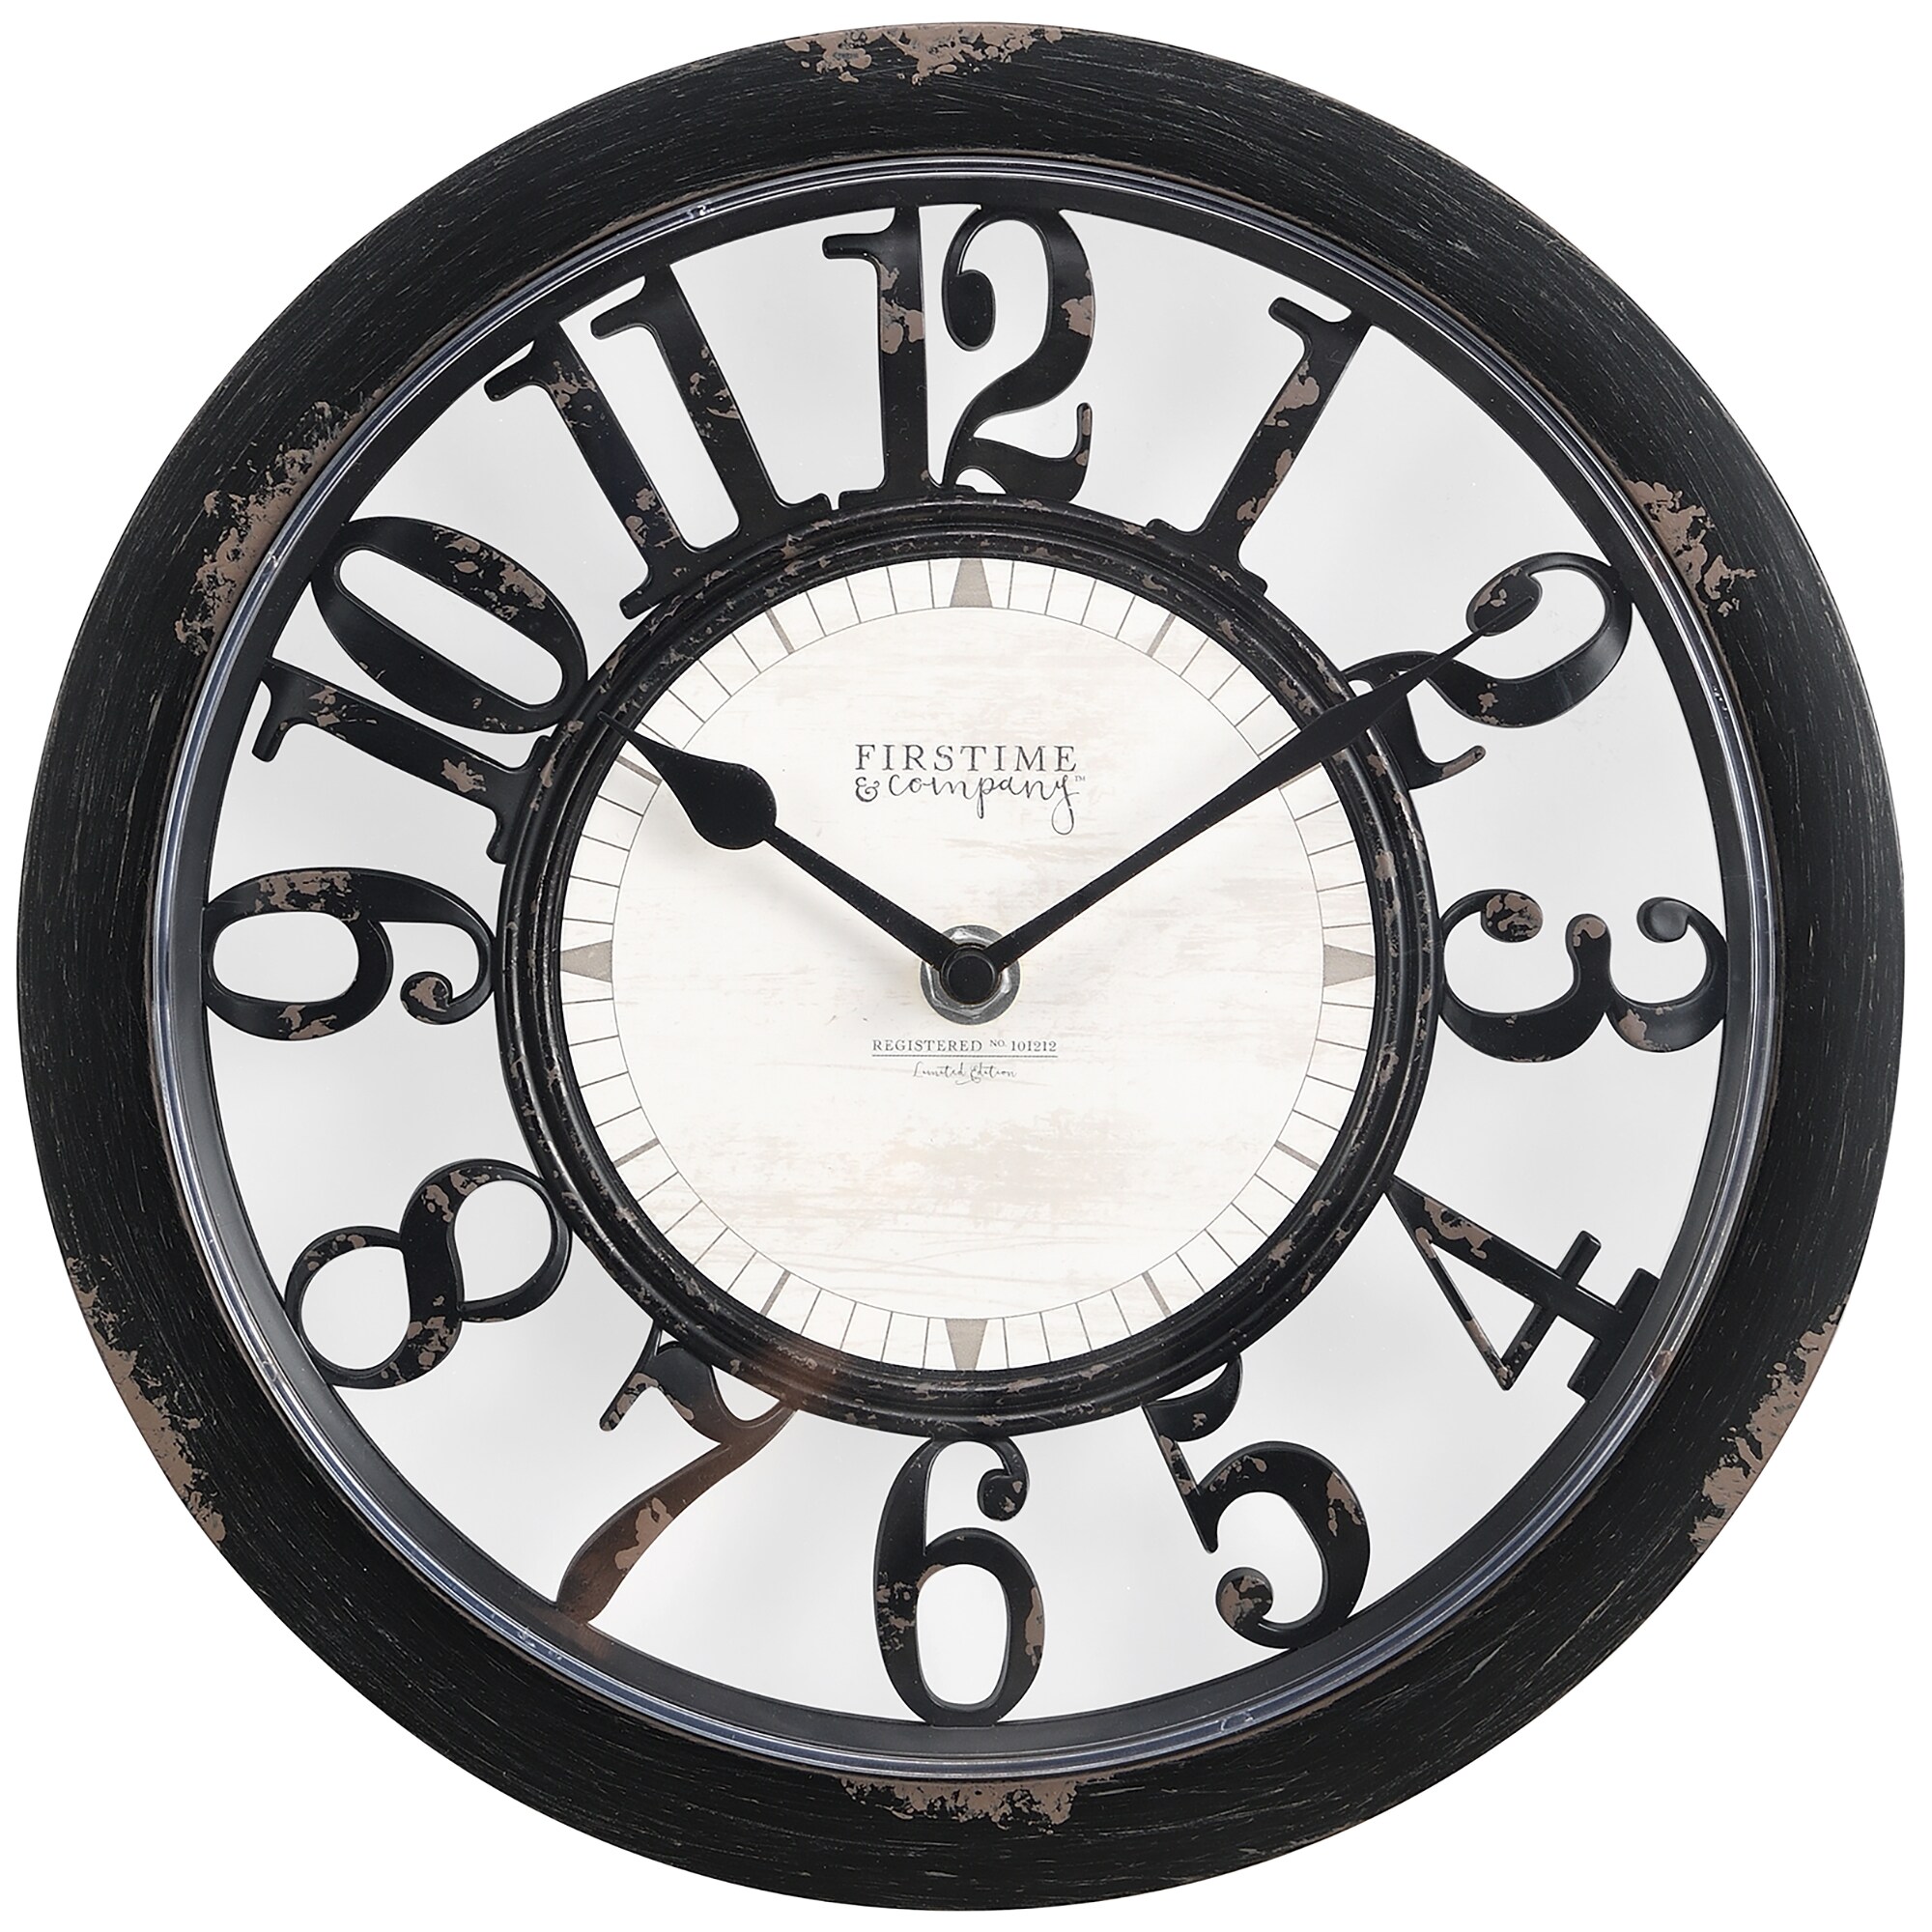 FirsTime & Co. Dark Silver Shiplap Outdoor Wall Clock, Farmhouse